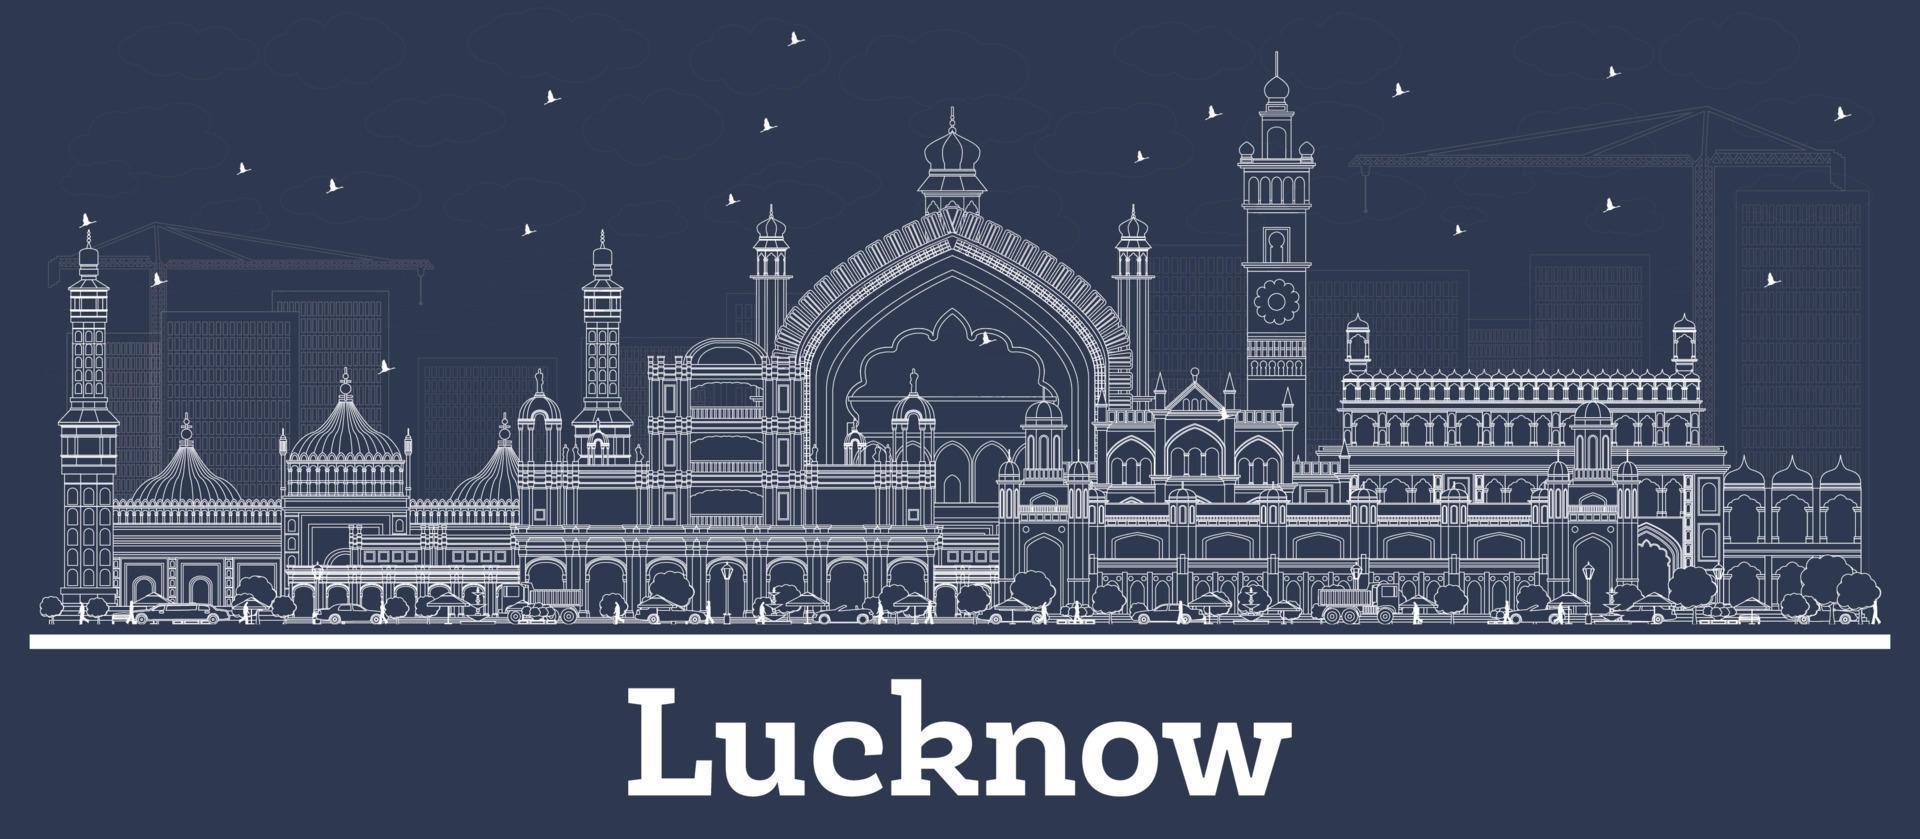 esbozar el horizonte de la ciudad de lucknow india con edificios blancos. vector